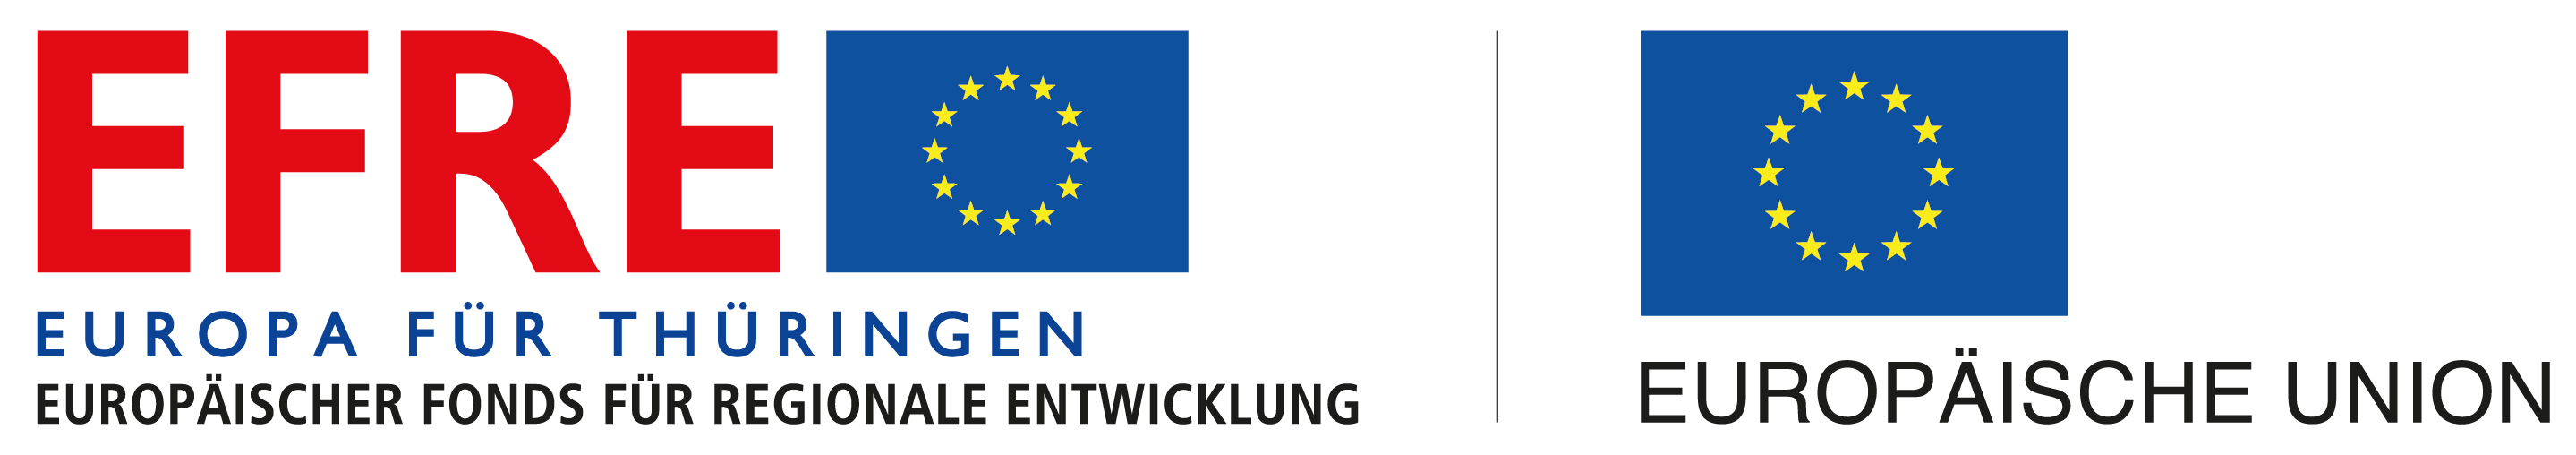 Logo europäischer Fonds für regionale Entwicklung